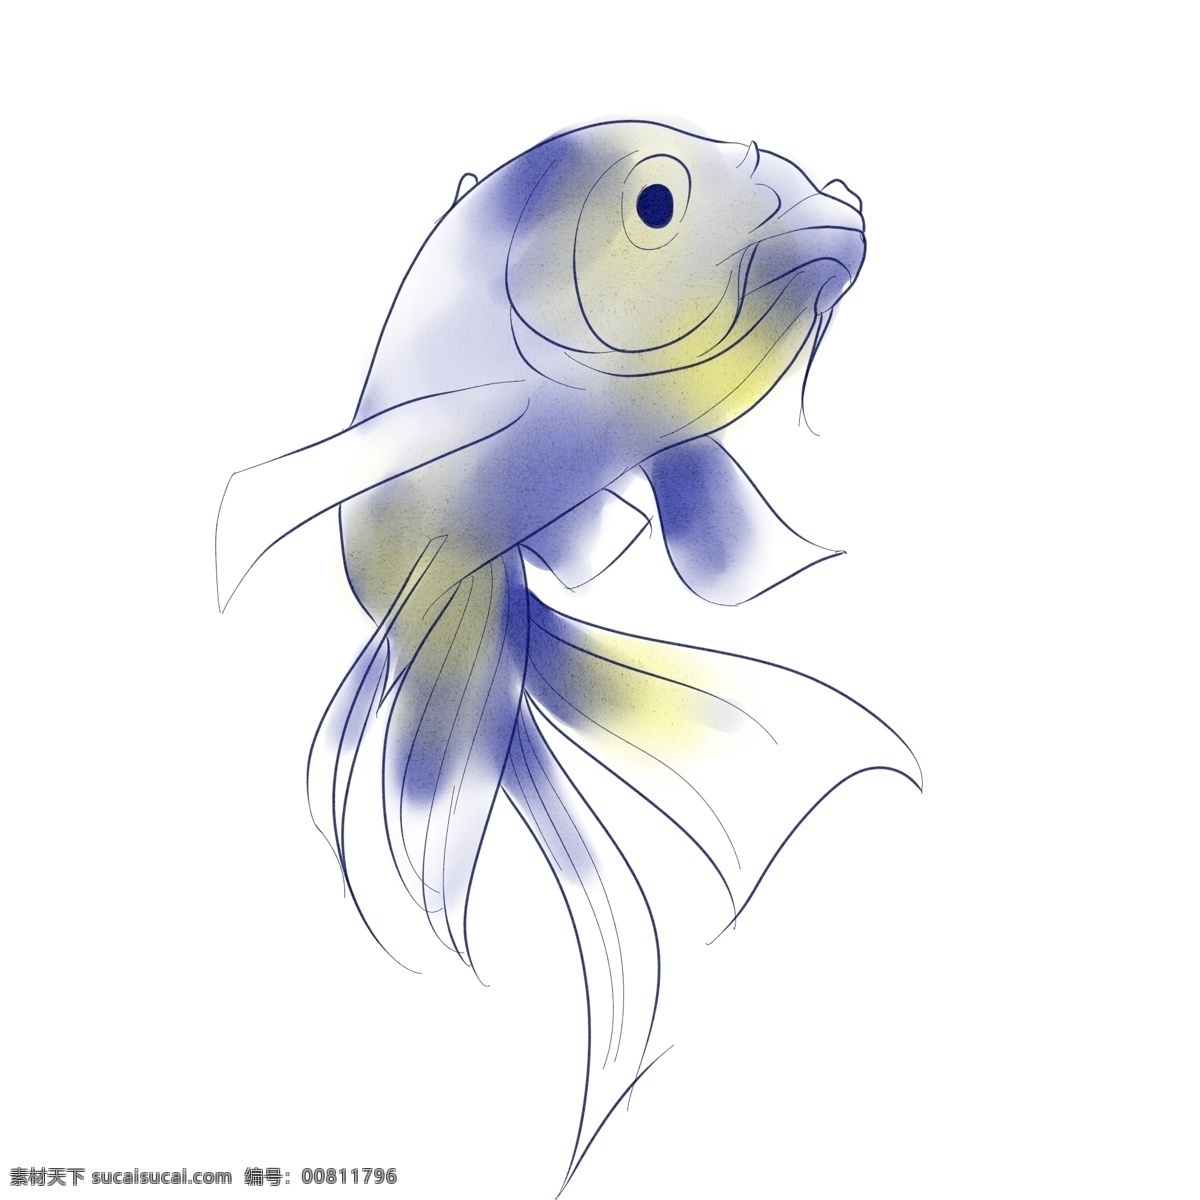 水彩 海洋 动物 鱼 手绘 清新 生物 蓝色 线条 可爱 文艺 板绘